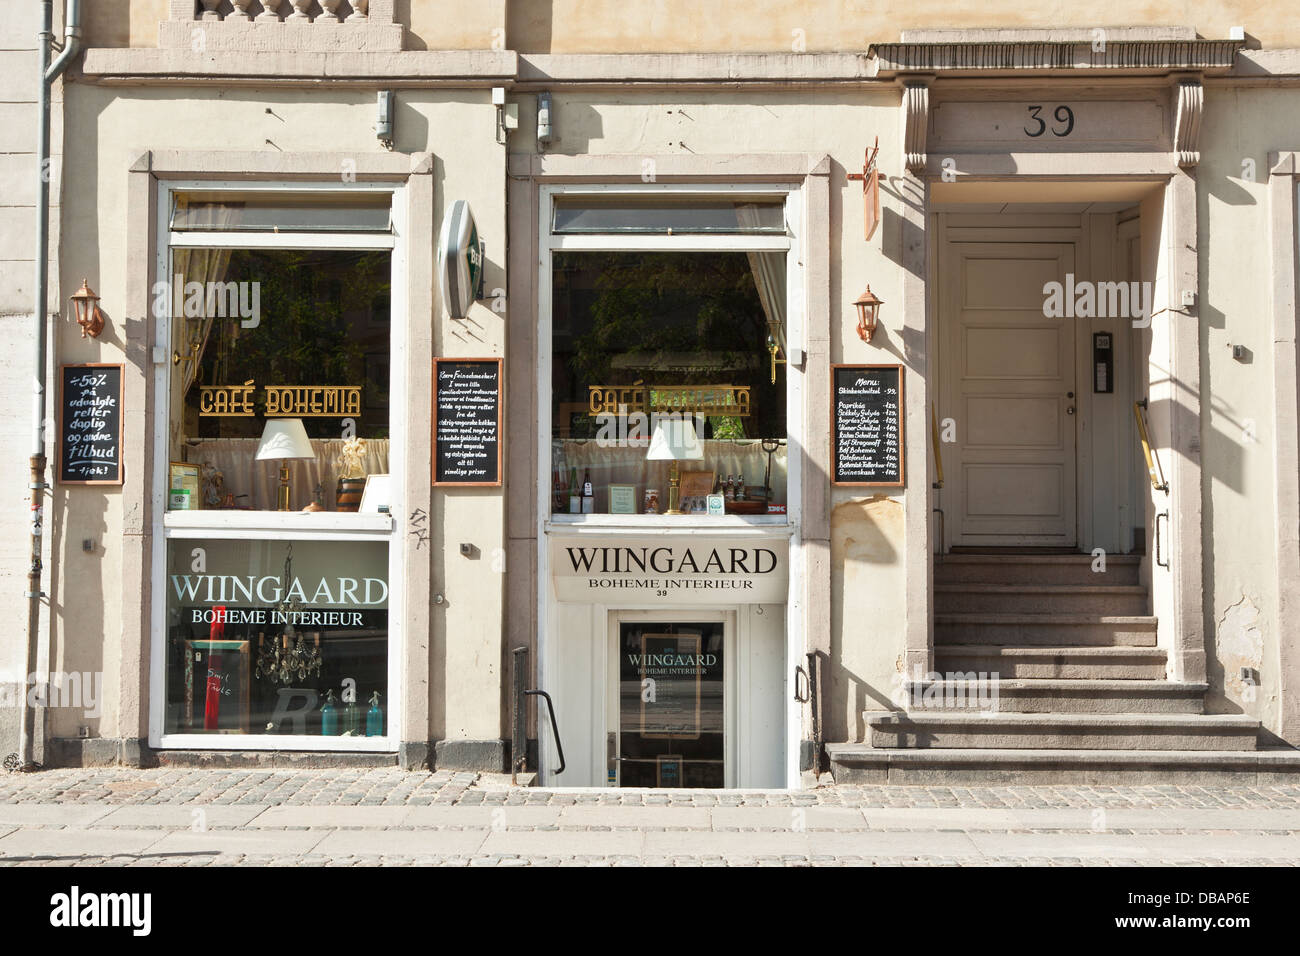 Wine shop in Copenhagen Stock Photo